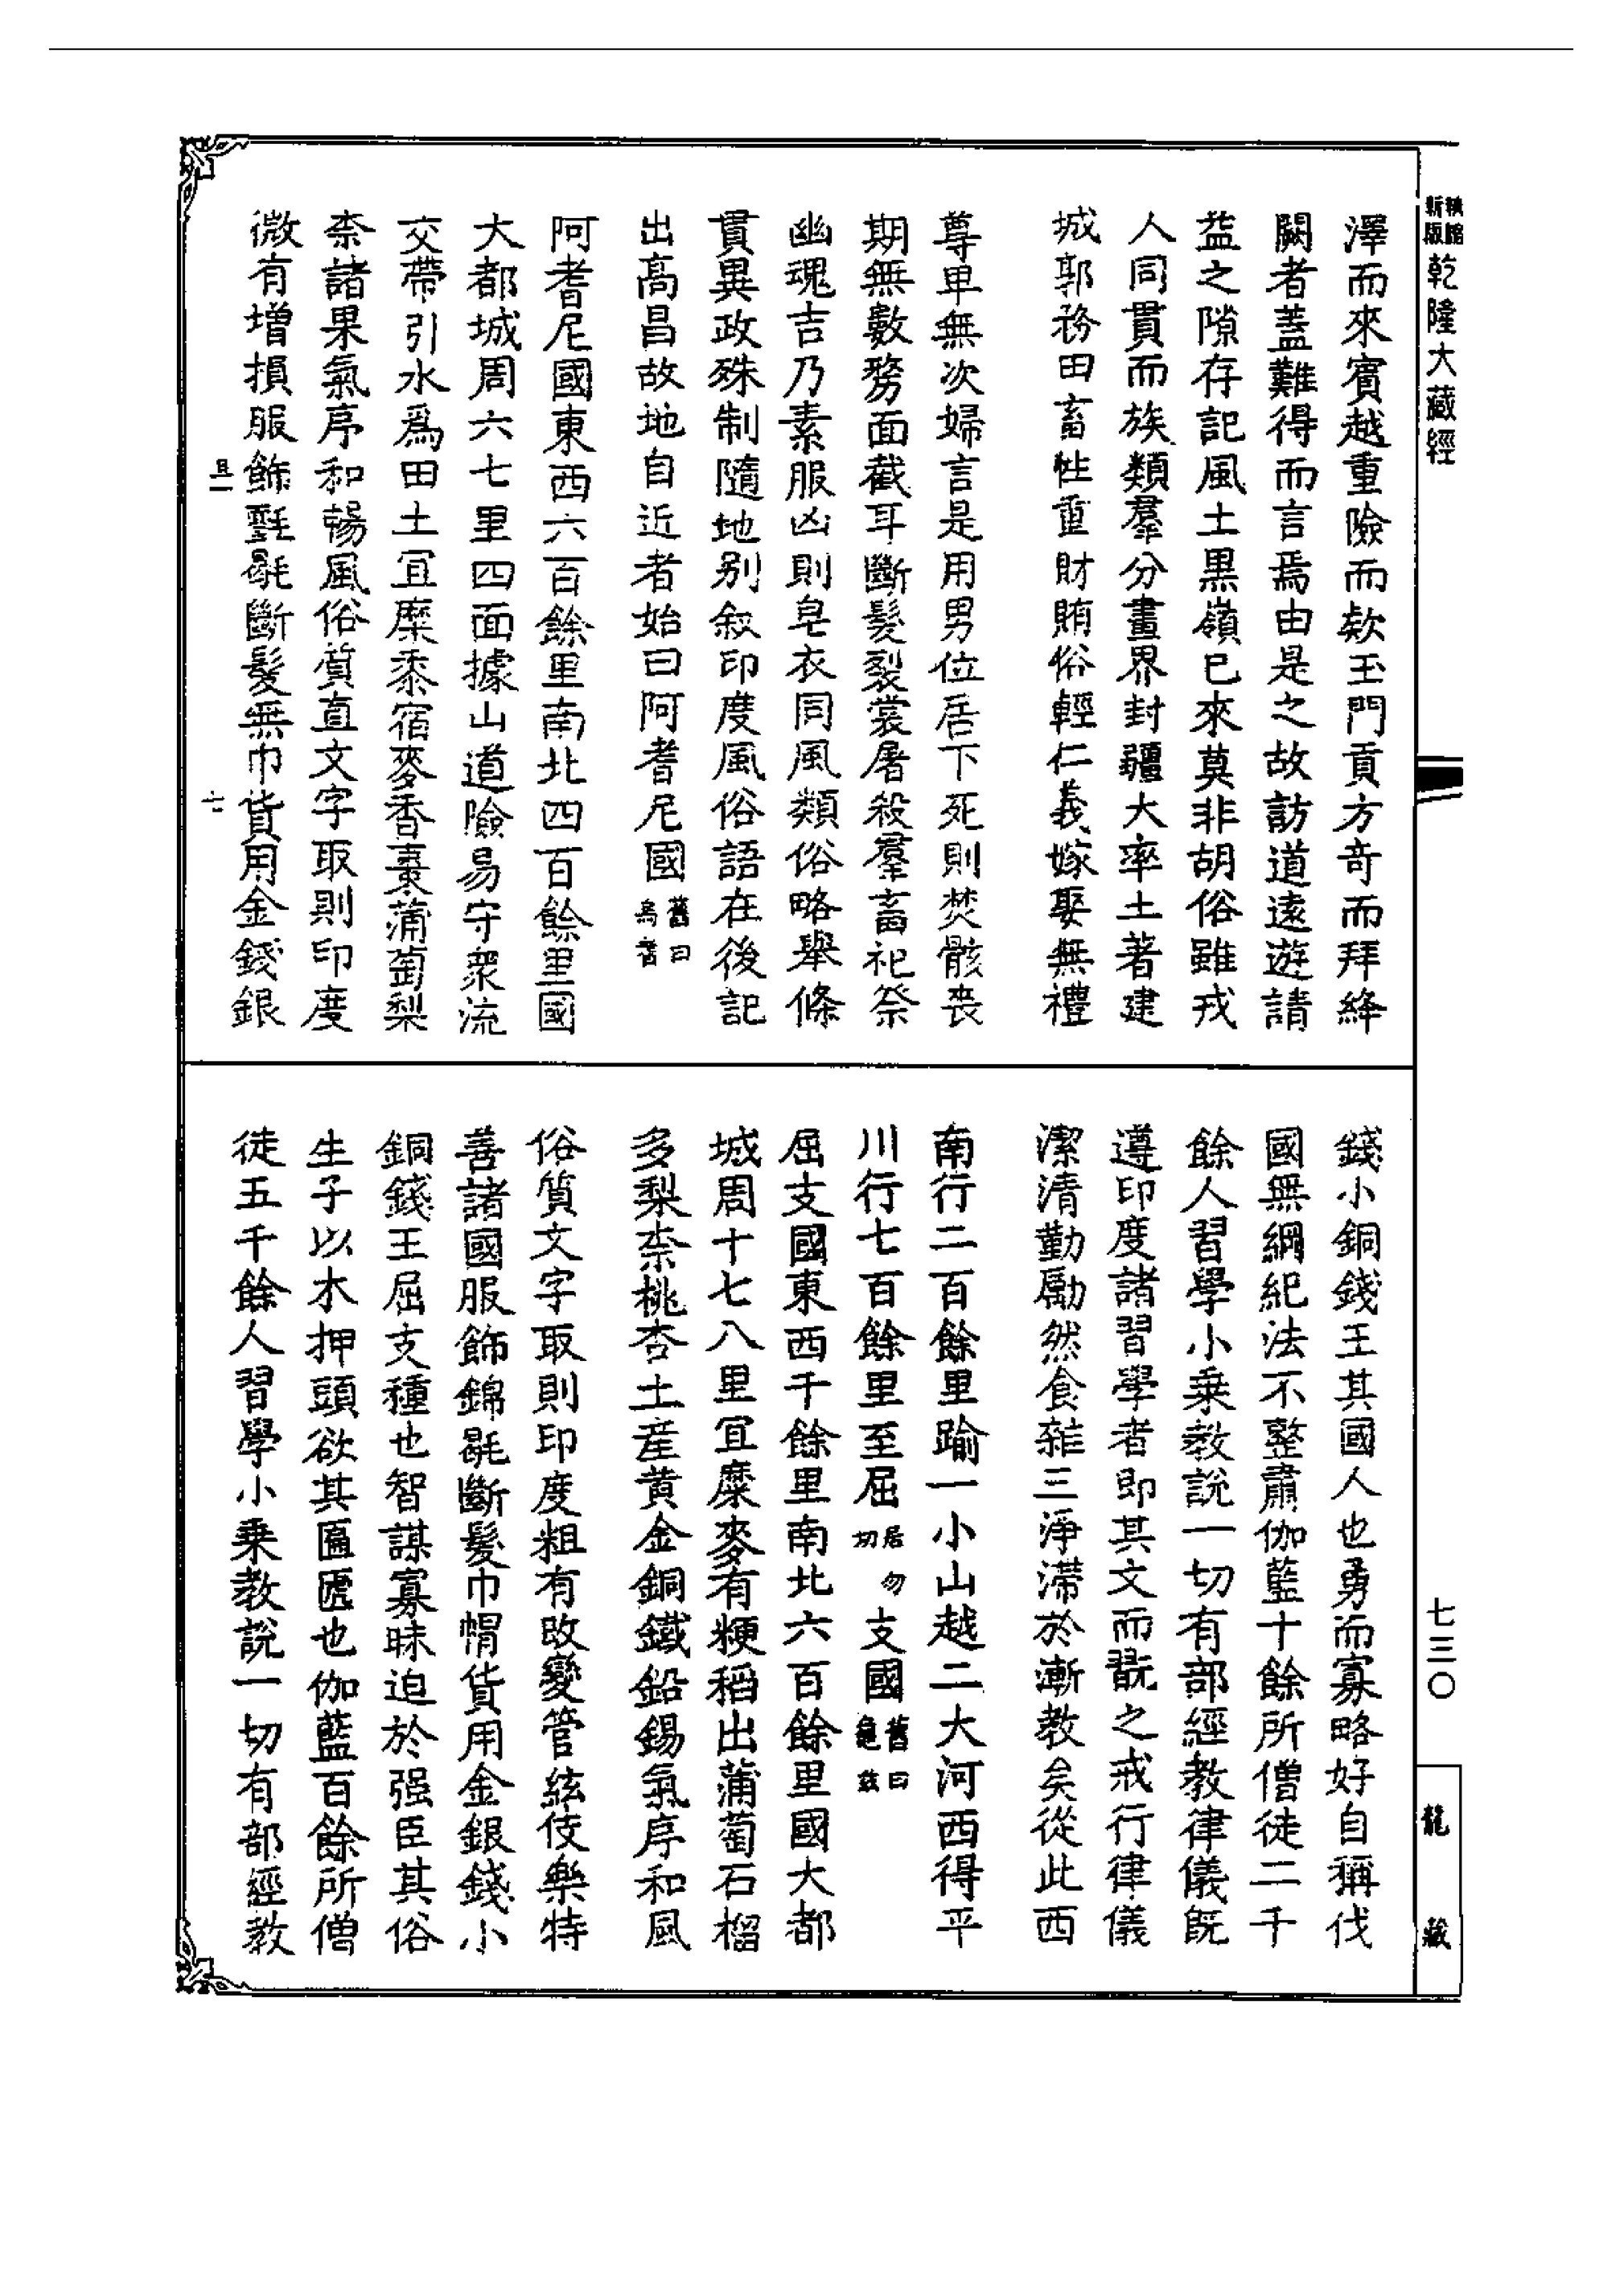 Linh Son Culture And Education Linhson Da Tang Xi Yu Ji Di Dao Di Shi Er Gan Long Da Cang Jing Di 124ce Page 2 3 Created With Publitas Com